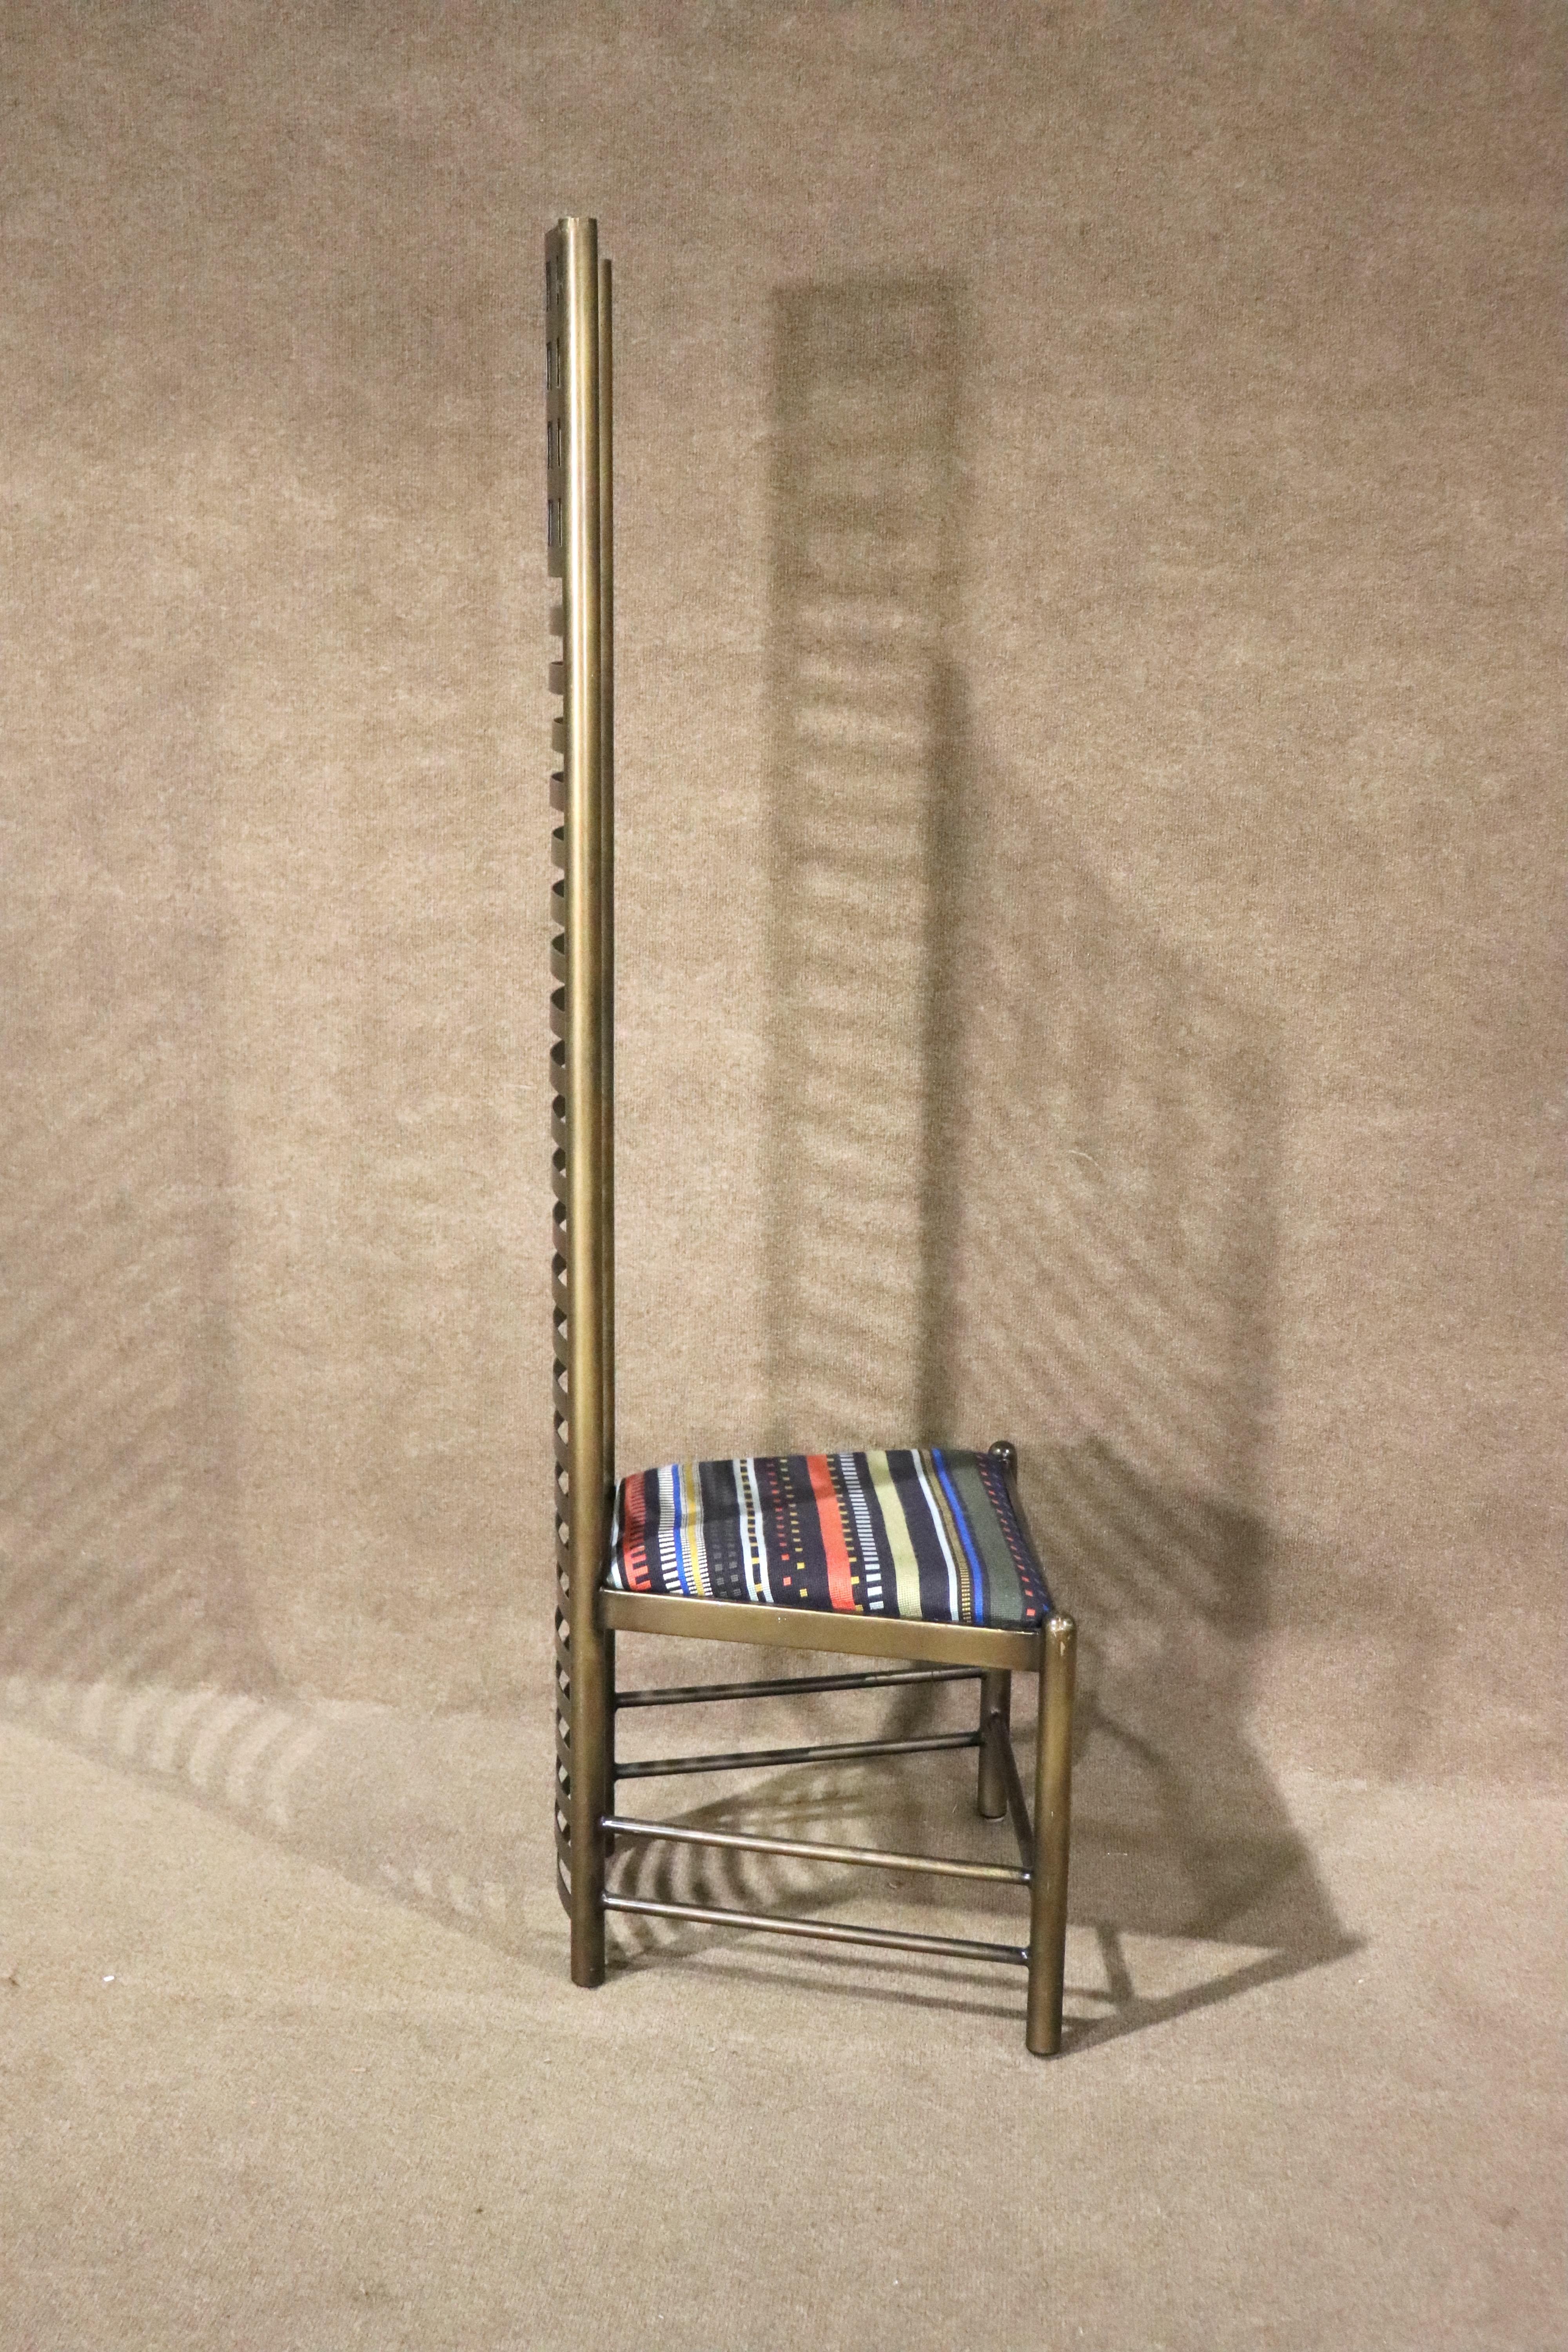 Chaise à dossier haut conçue par Charles Rennie Mackintosh pour Cassina. Chaise conçue en 1902 et relancée en 1973. Fabriqué par Cassina en Italie.
Veuillez confirmer le lieu NY ou NJ